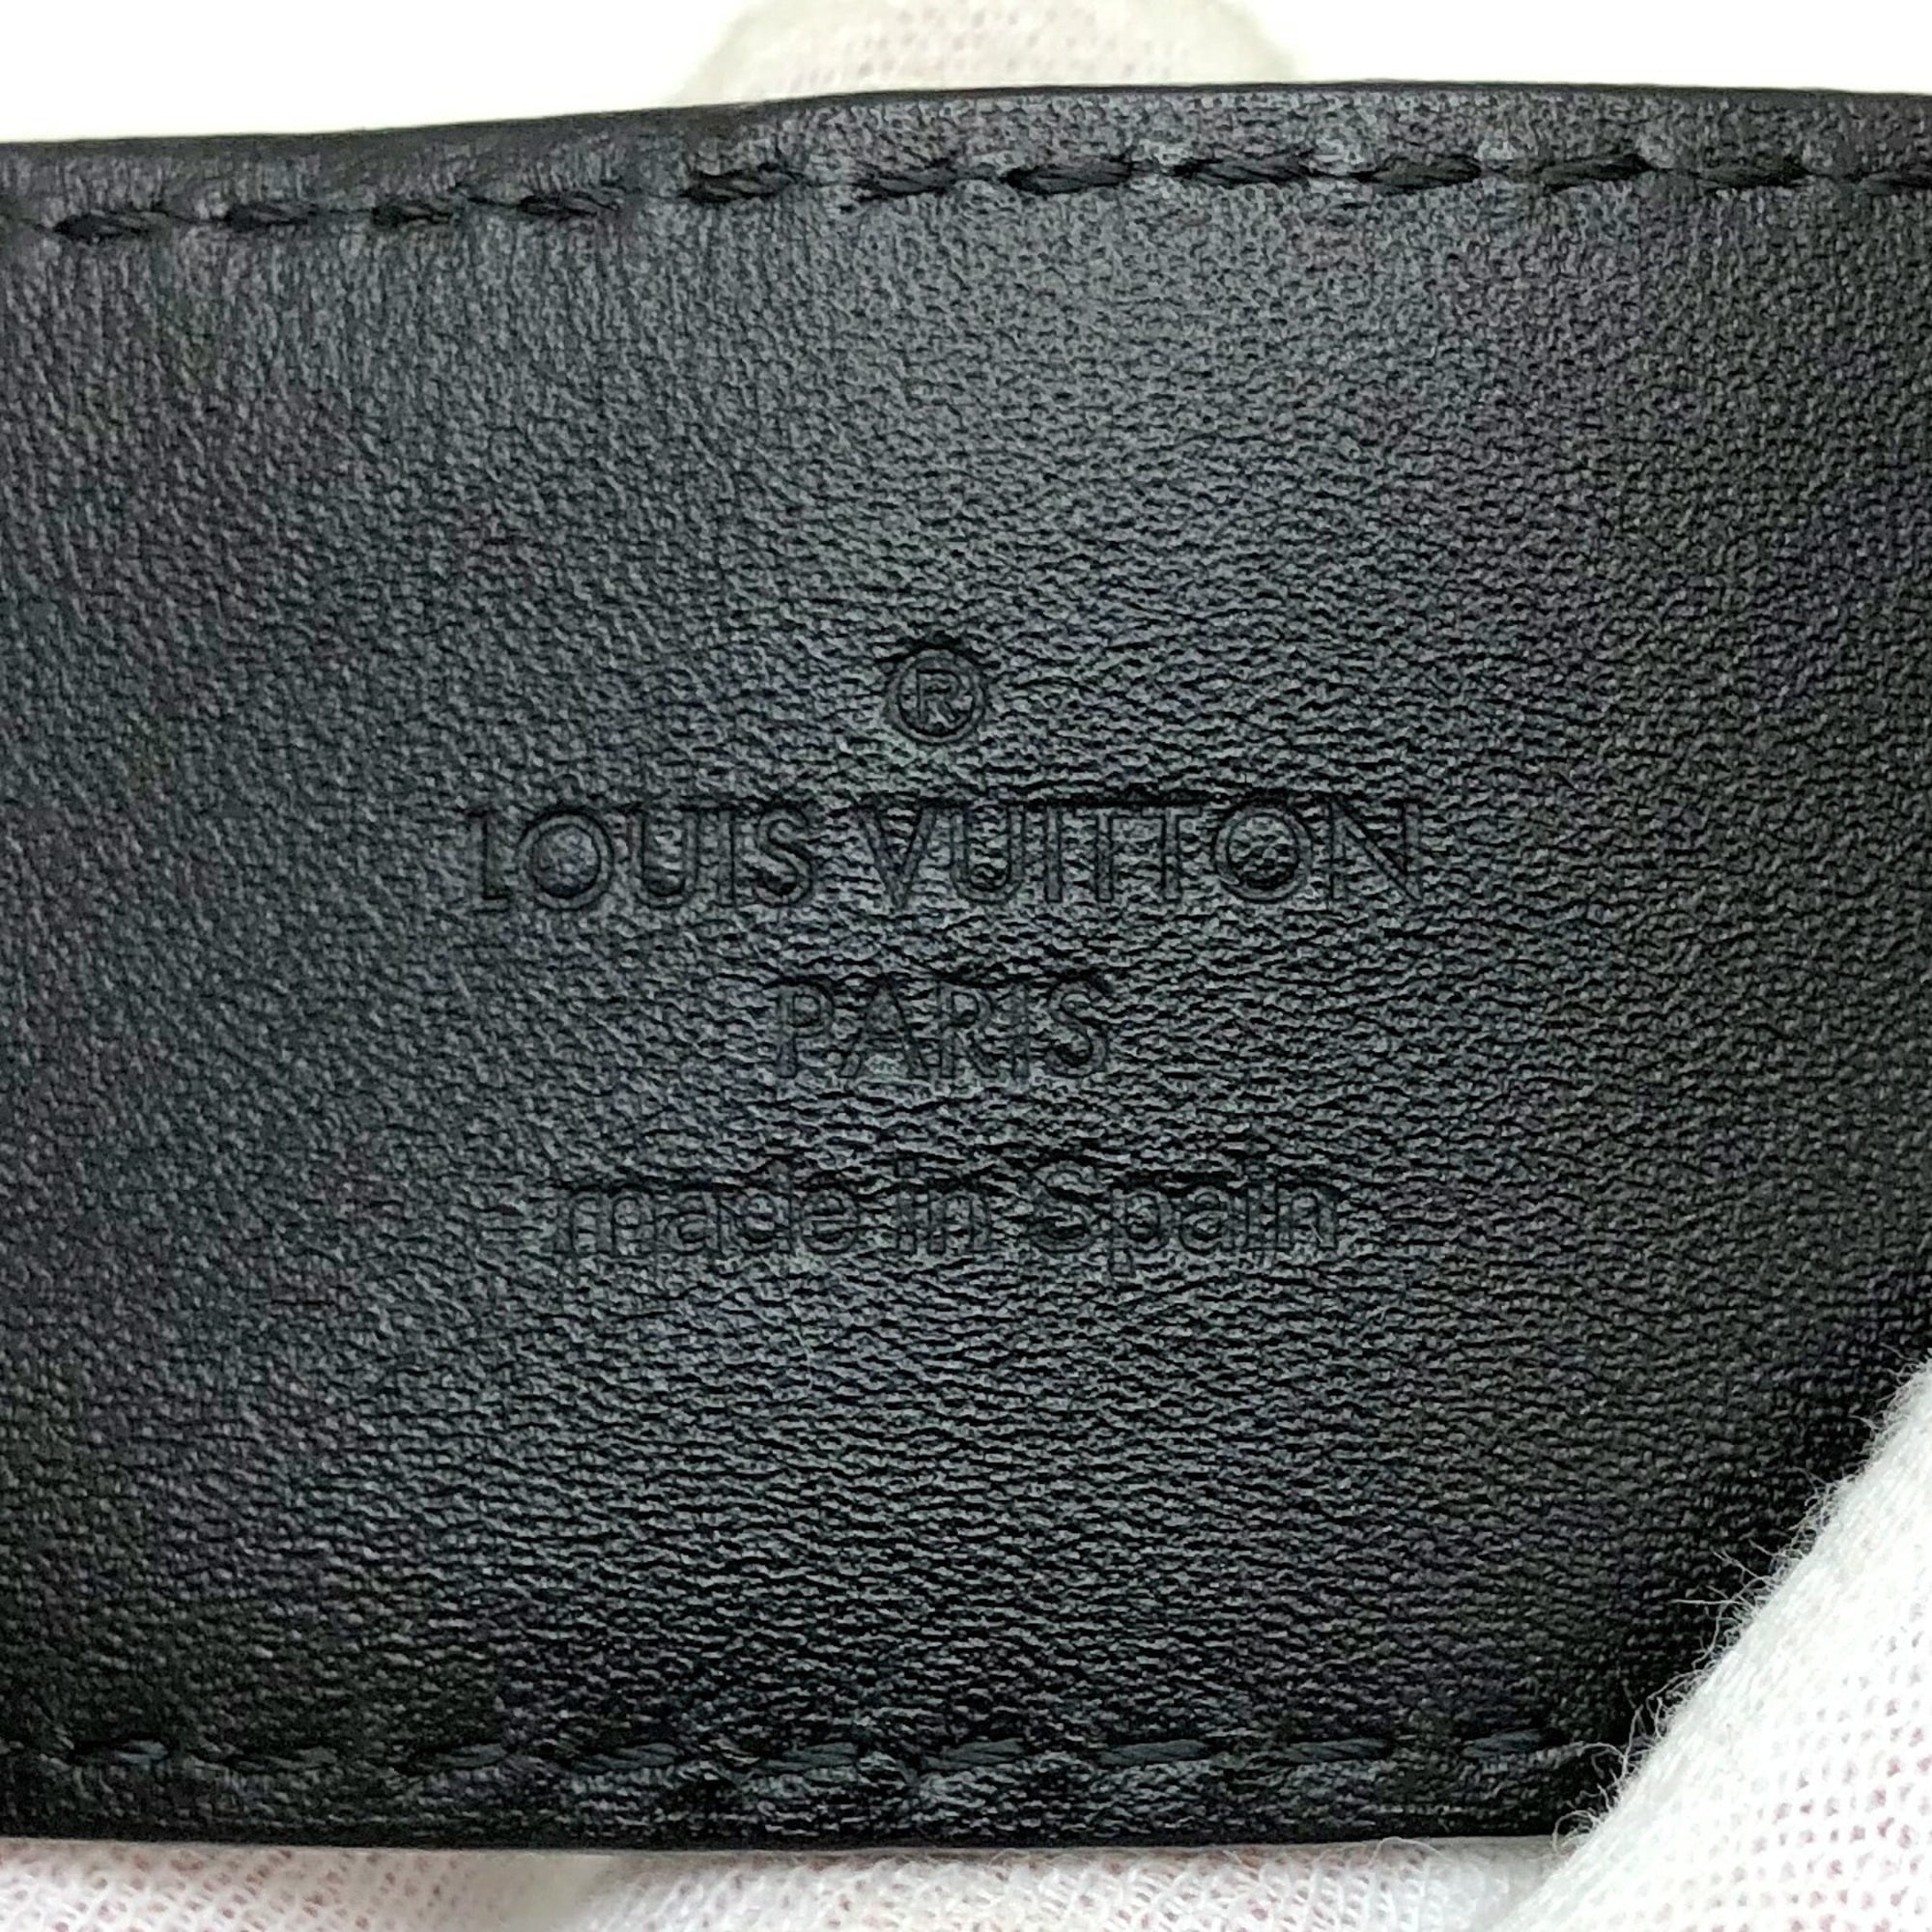 Louis Vuitton MONOGRAM MACASSAR 2019-20FW Signature Chain 35Mm Belt  (M0180Q, M0180S, M0180T, M0180U, M0180V)